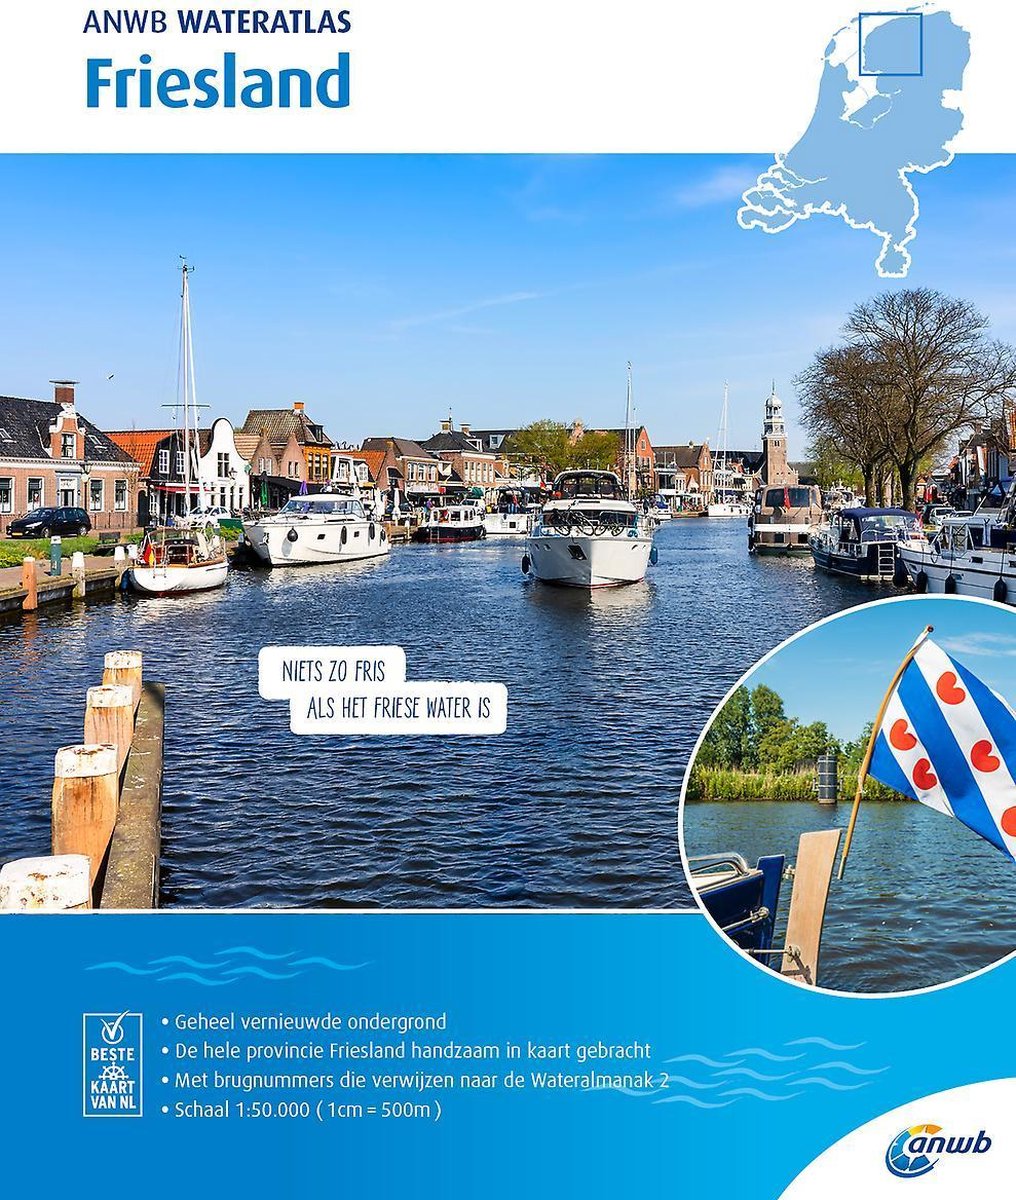 ANWB waterkaart - Wateratlas Friesland - ANWB